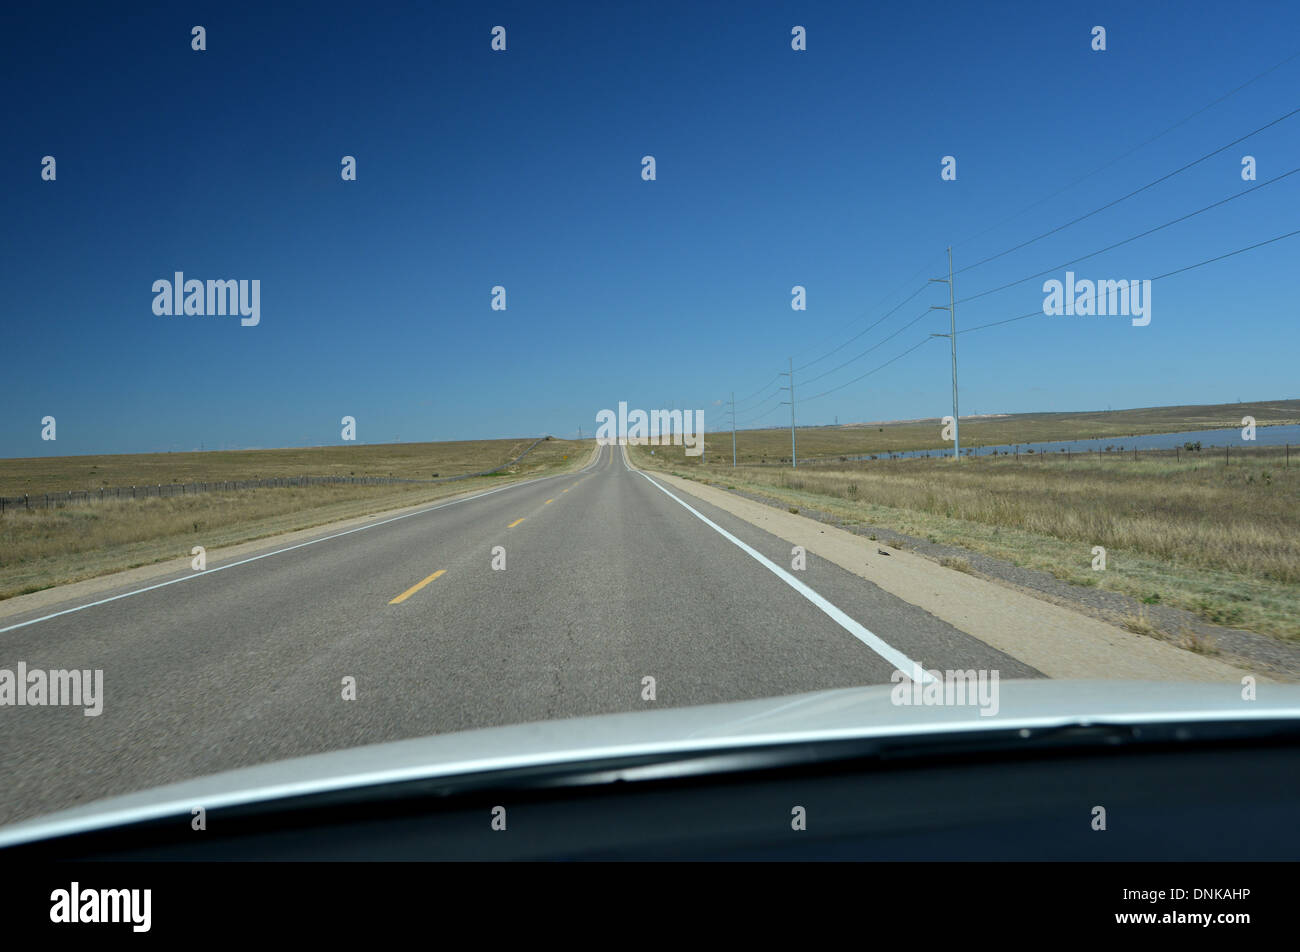 Route 66 road trip. Longue ligne droite Nouveau Mexique road vu de l'intérieur d'une voiture Banque D'Images